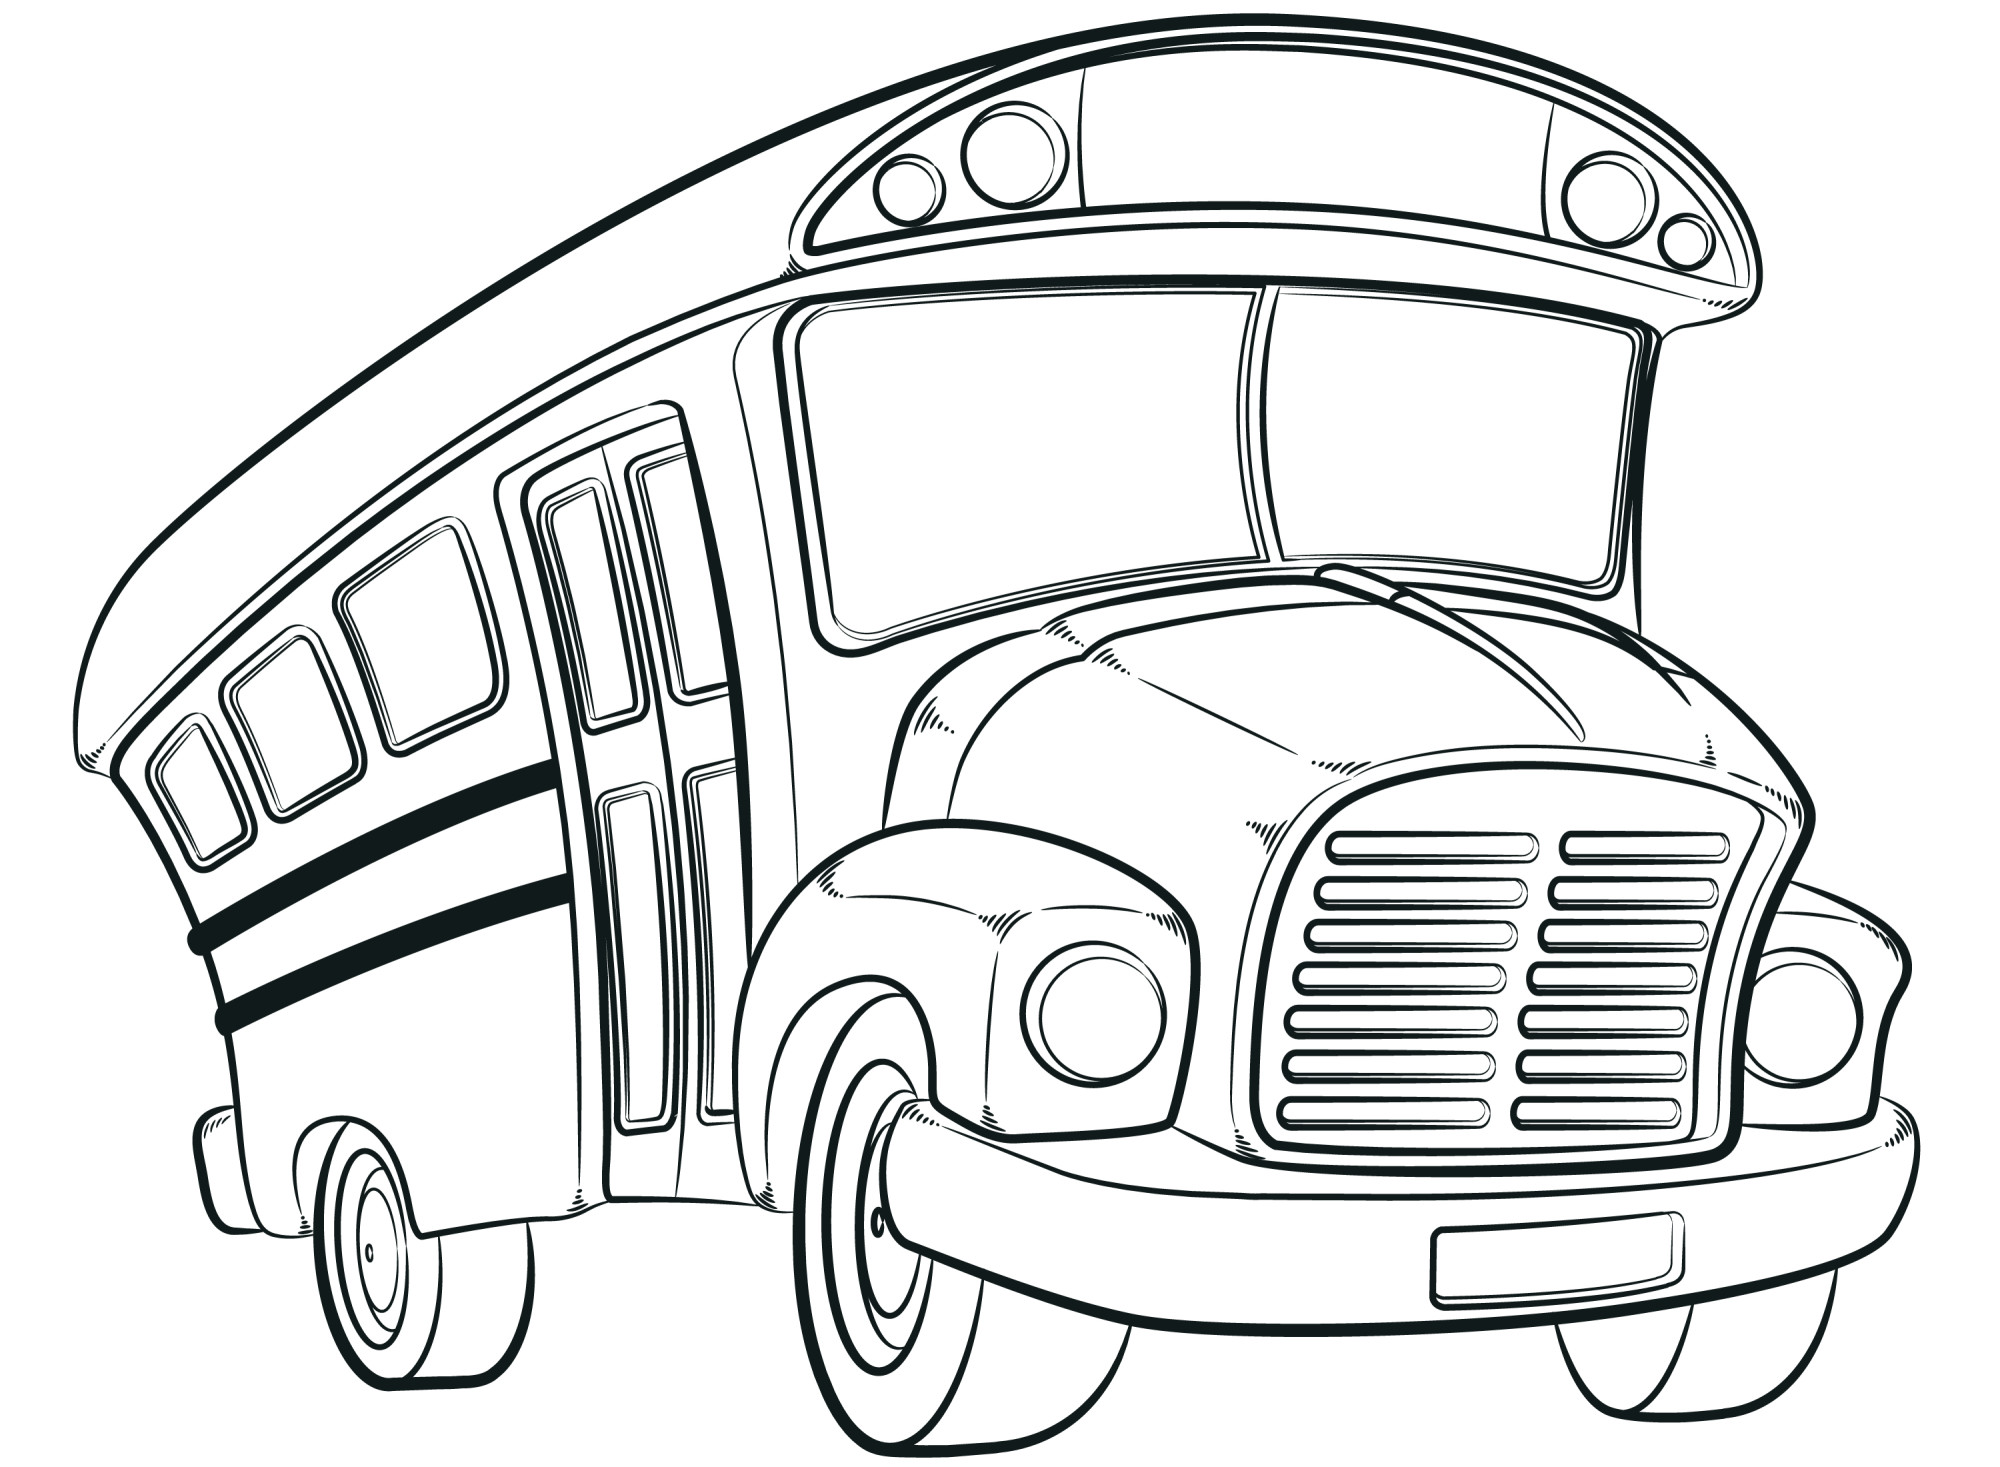 Раскраска для детей: большой школьный автобус